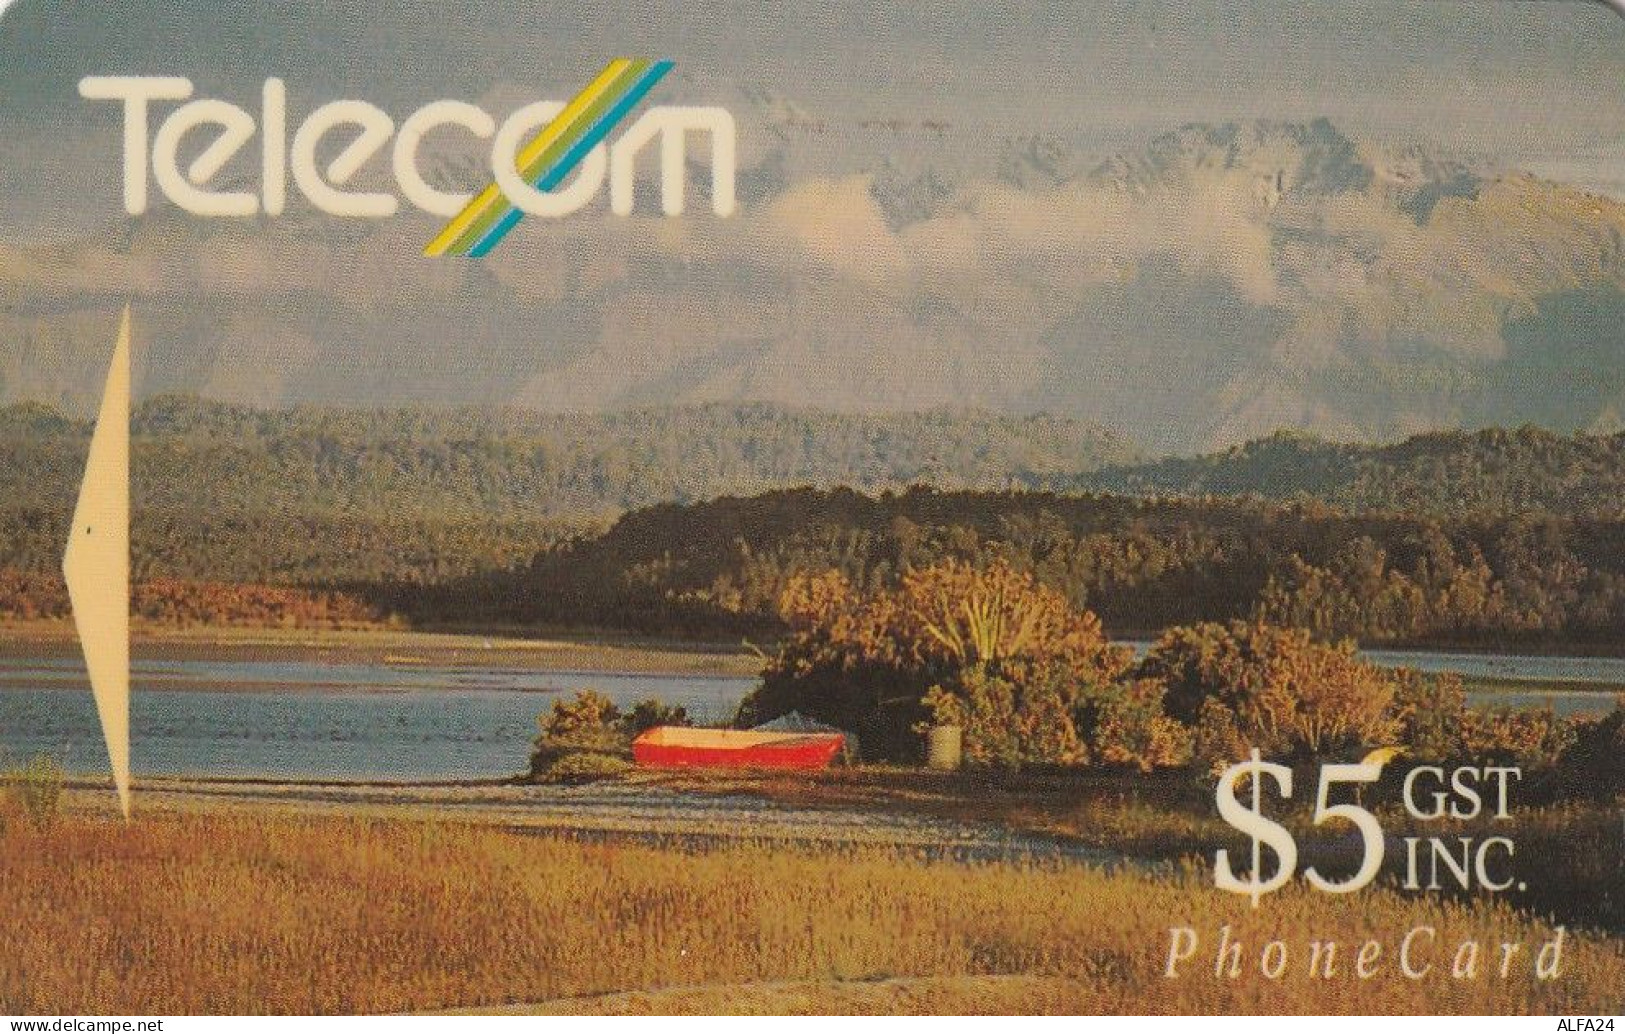 PHONE CARD NUOVA ZELANDA  (CZ644 - Nouvelle-Zélande